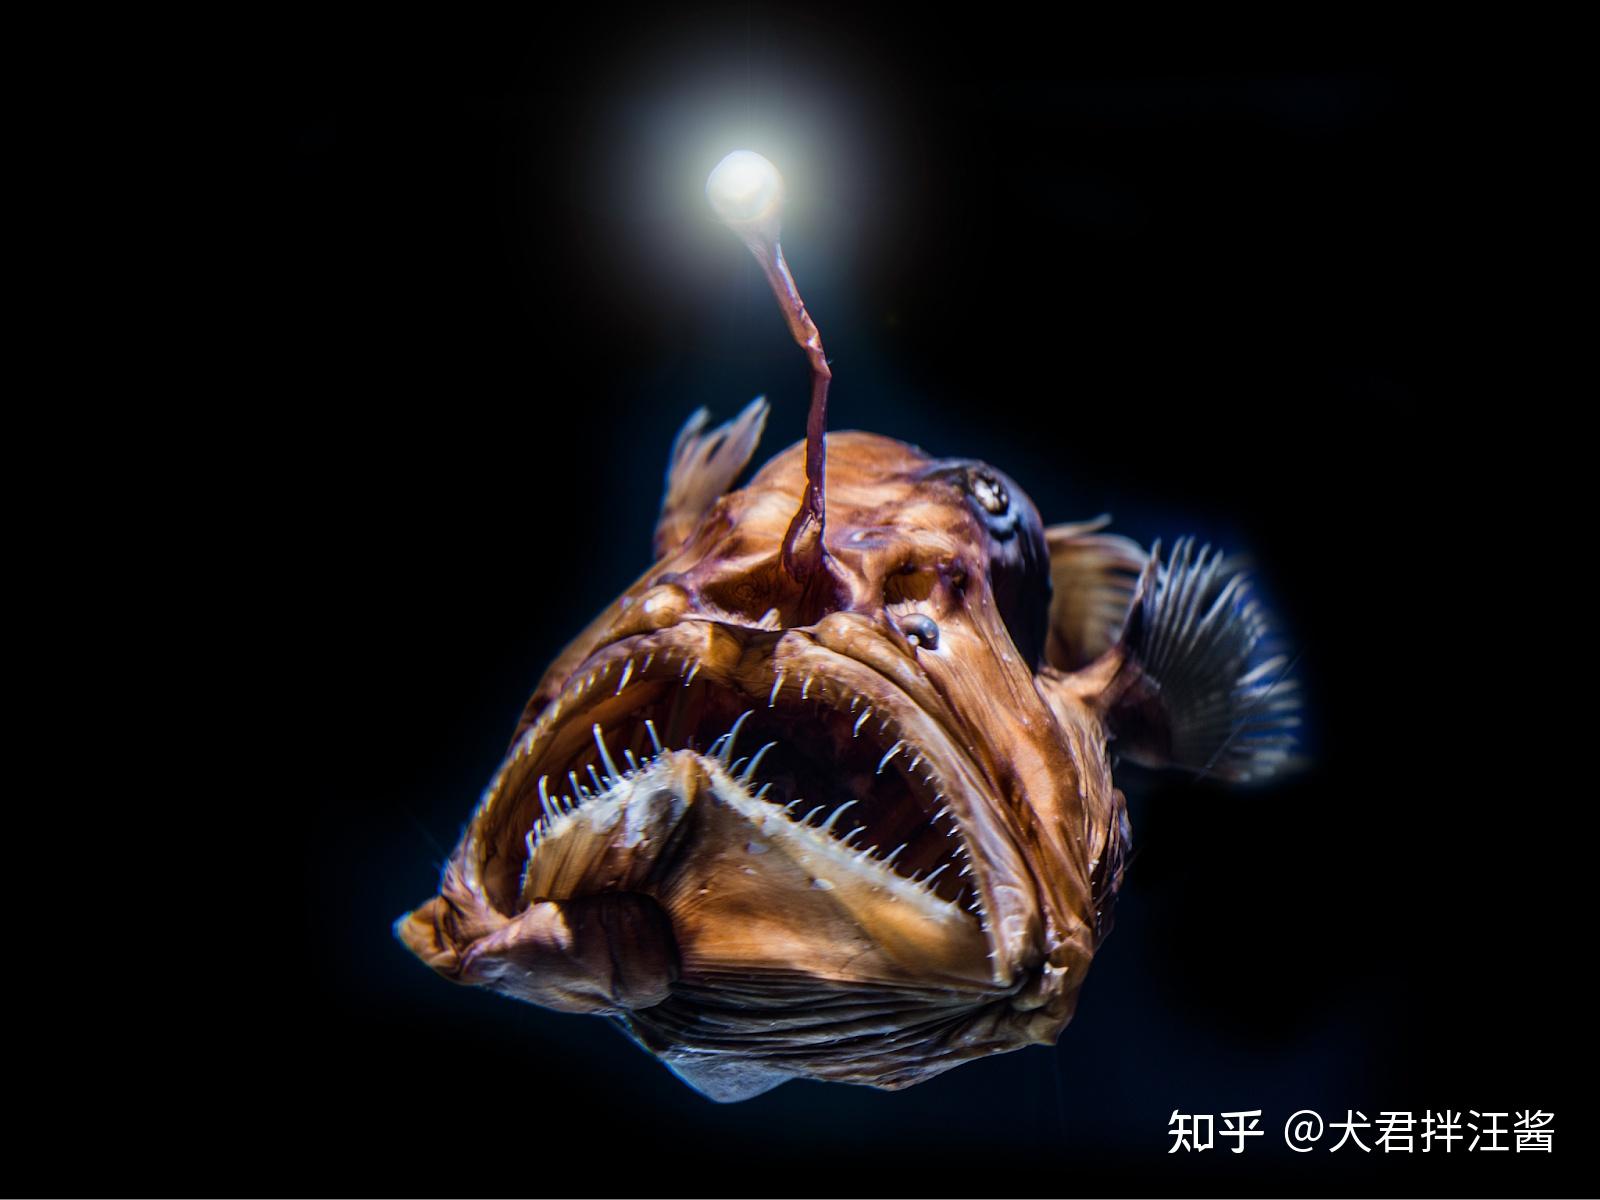 深海里的灯笼鱼图片